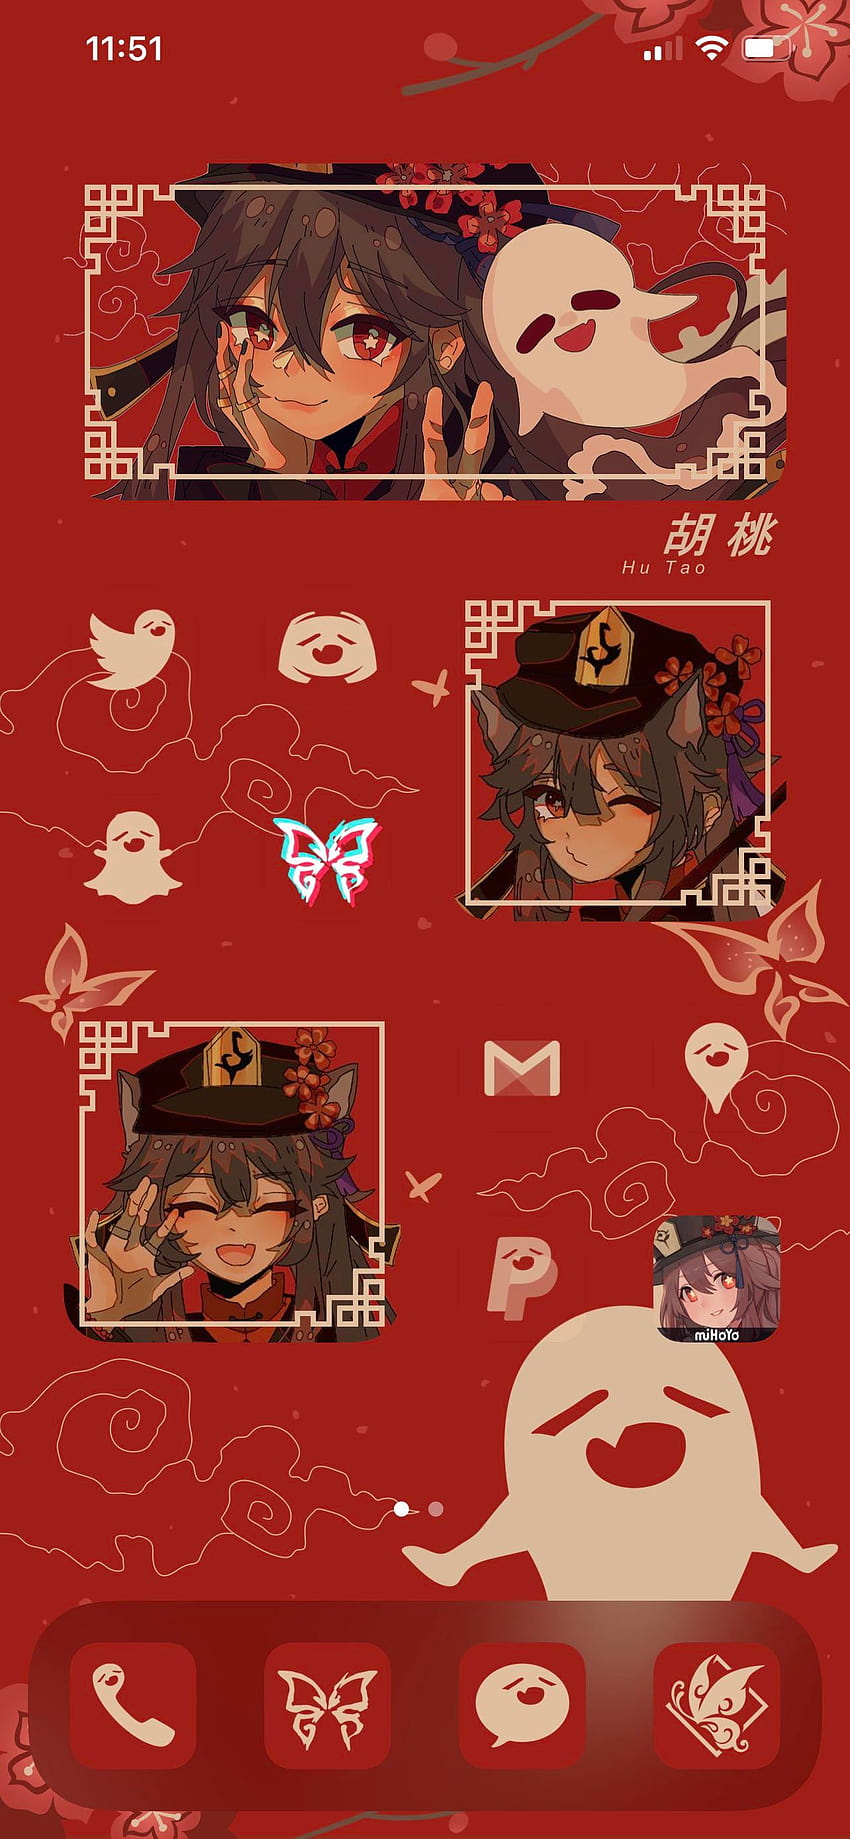 Saya menyesuaikan ponsel saya dengan tema Hu Tao!, estetika hu tao wallpaper ponsel HD